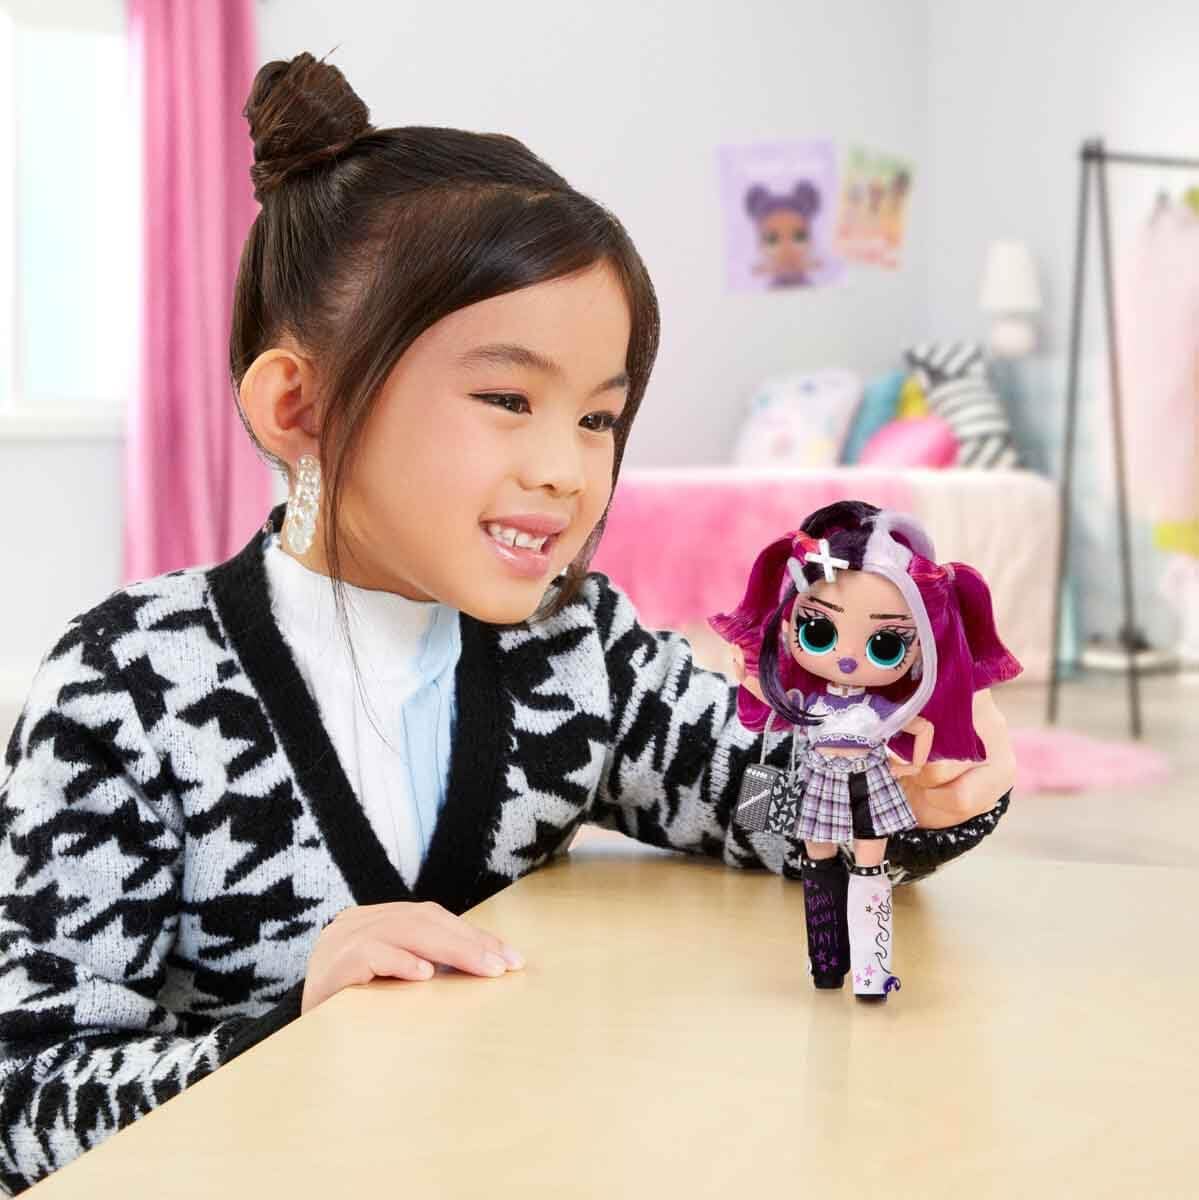 LOL Surprise Boneca fashion Tweens Série 4 - JENNY ROX - Unbox 15 surpresas e acessórios fabulosos - Ótimo presente para crianças de 4 anos ou mais